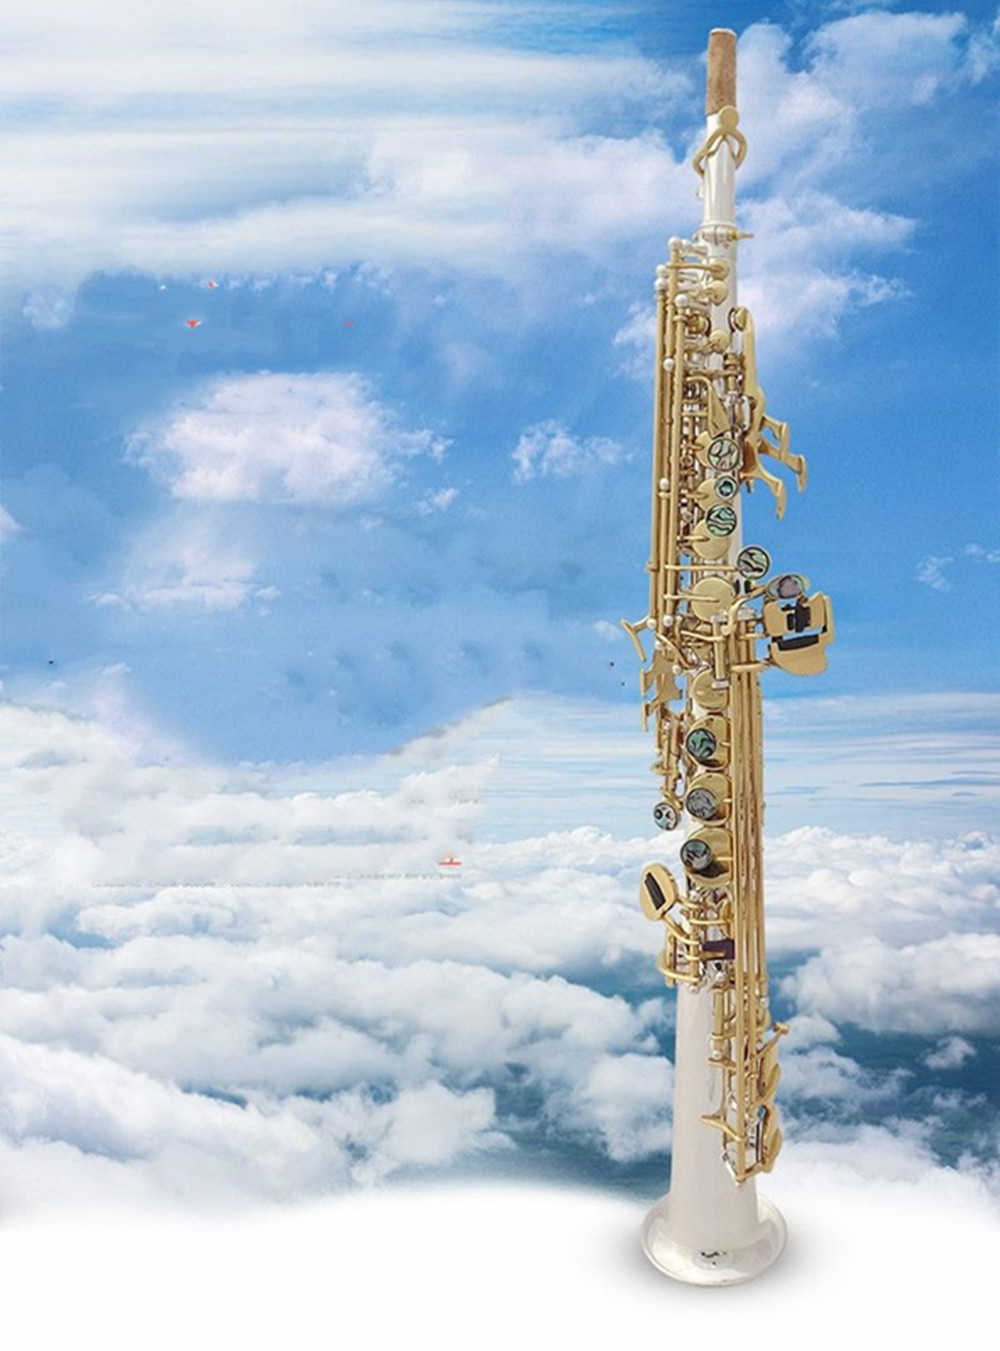 Japan äkta sopransaxofon silverpläterad musik Ny S-992 B platt rak saxofon som spelar professionellt